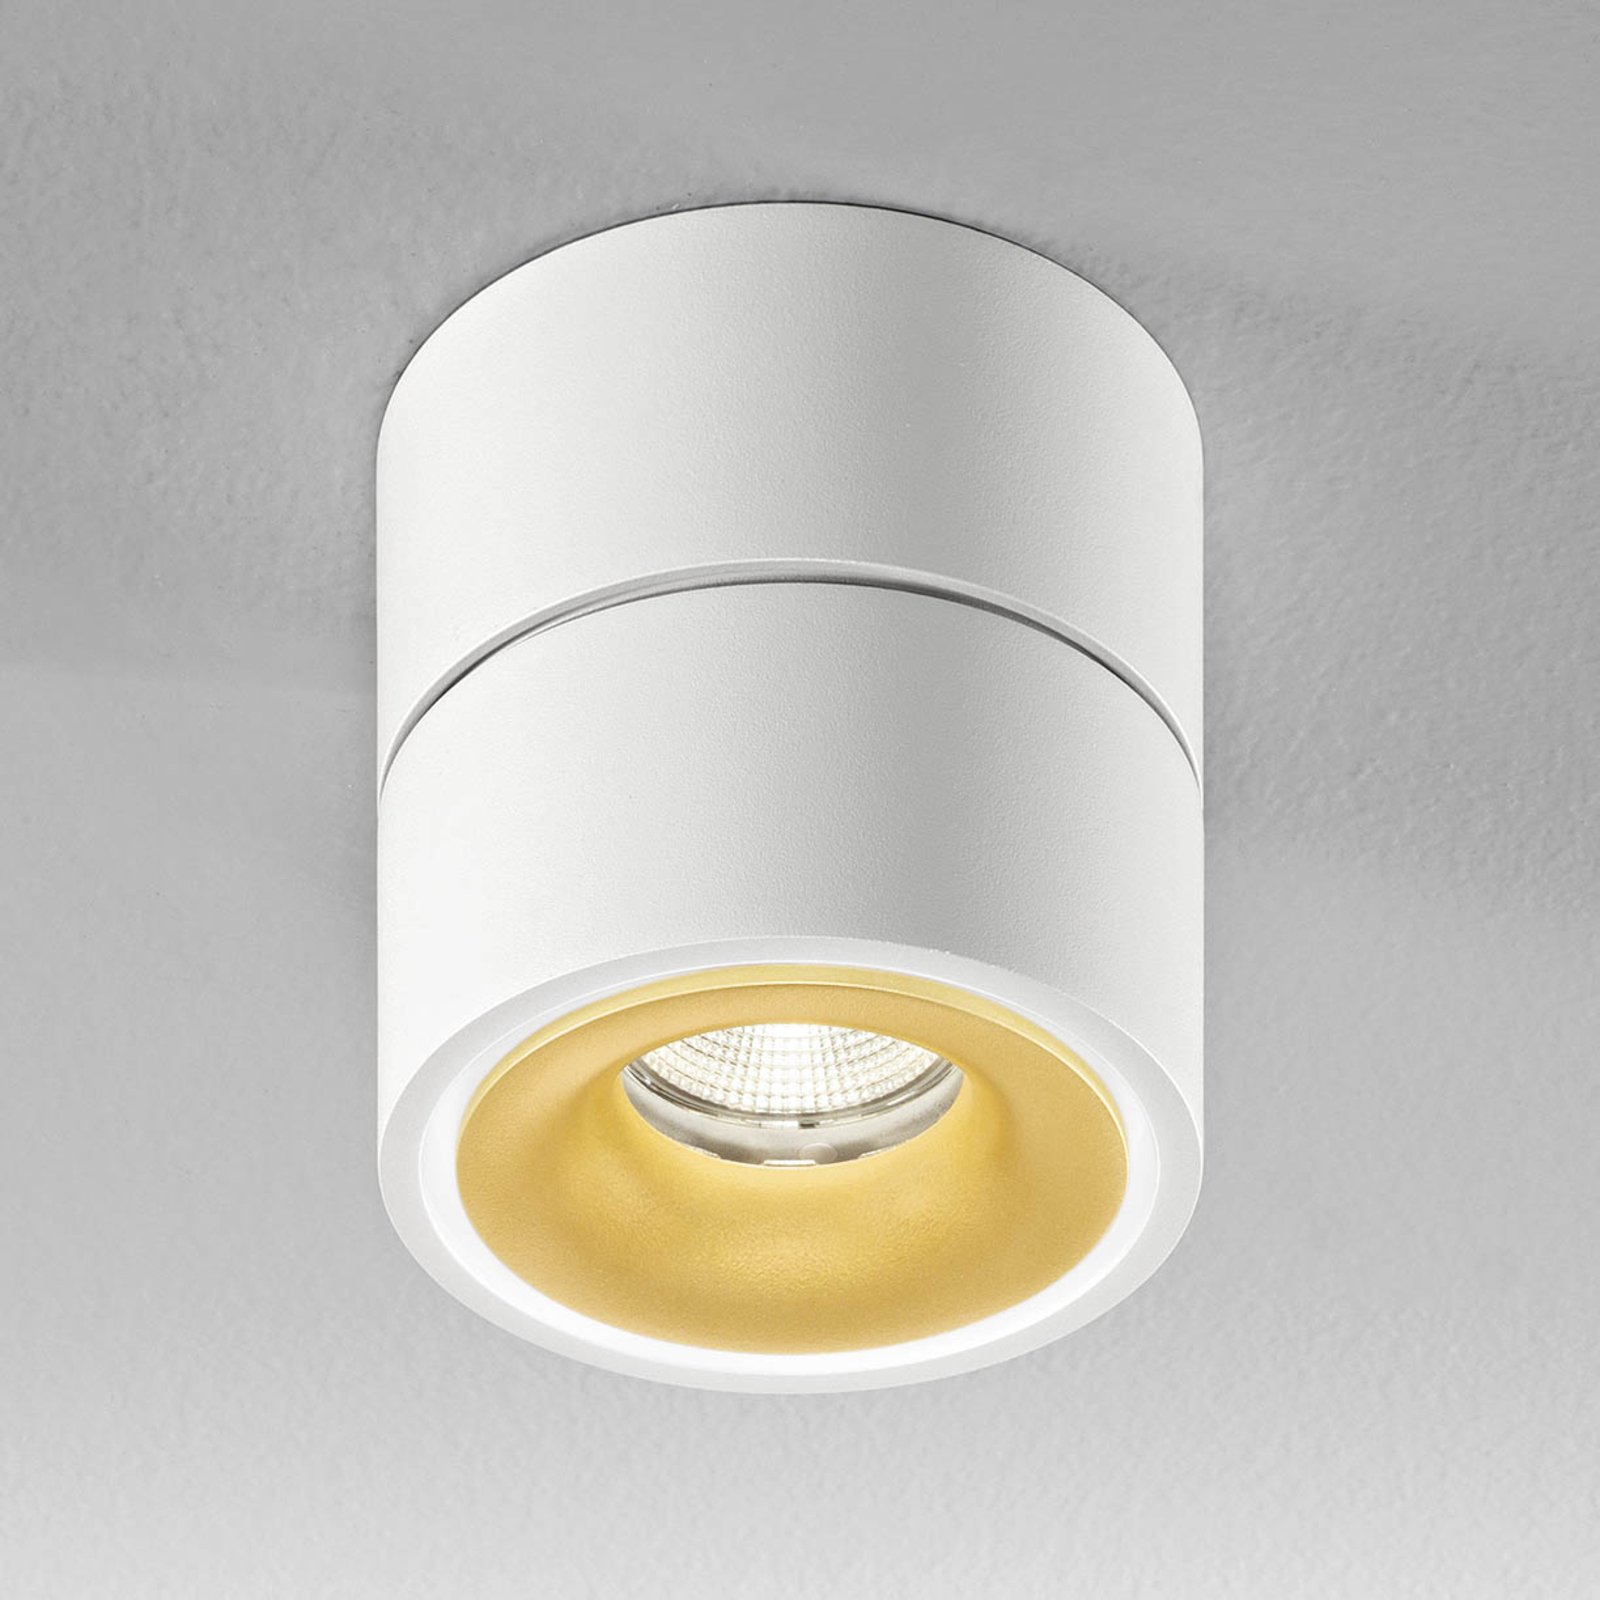 Egger Clippo S LED downlight, white/gold